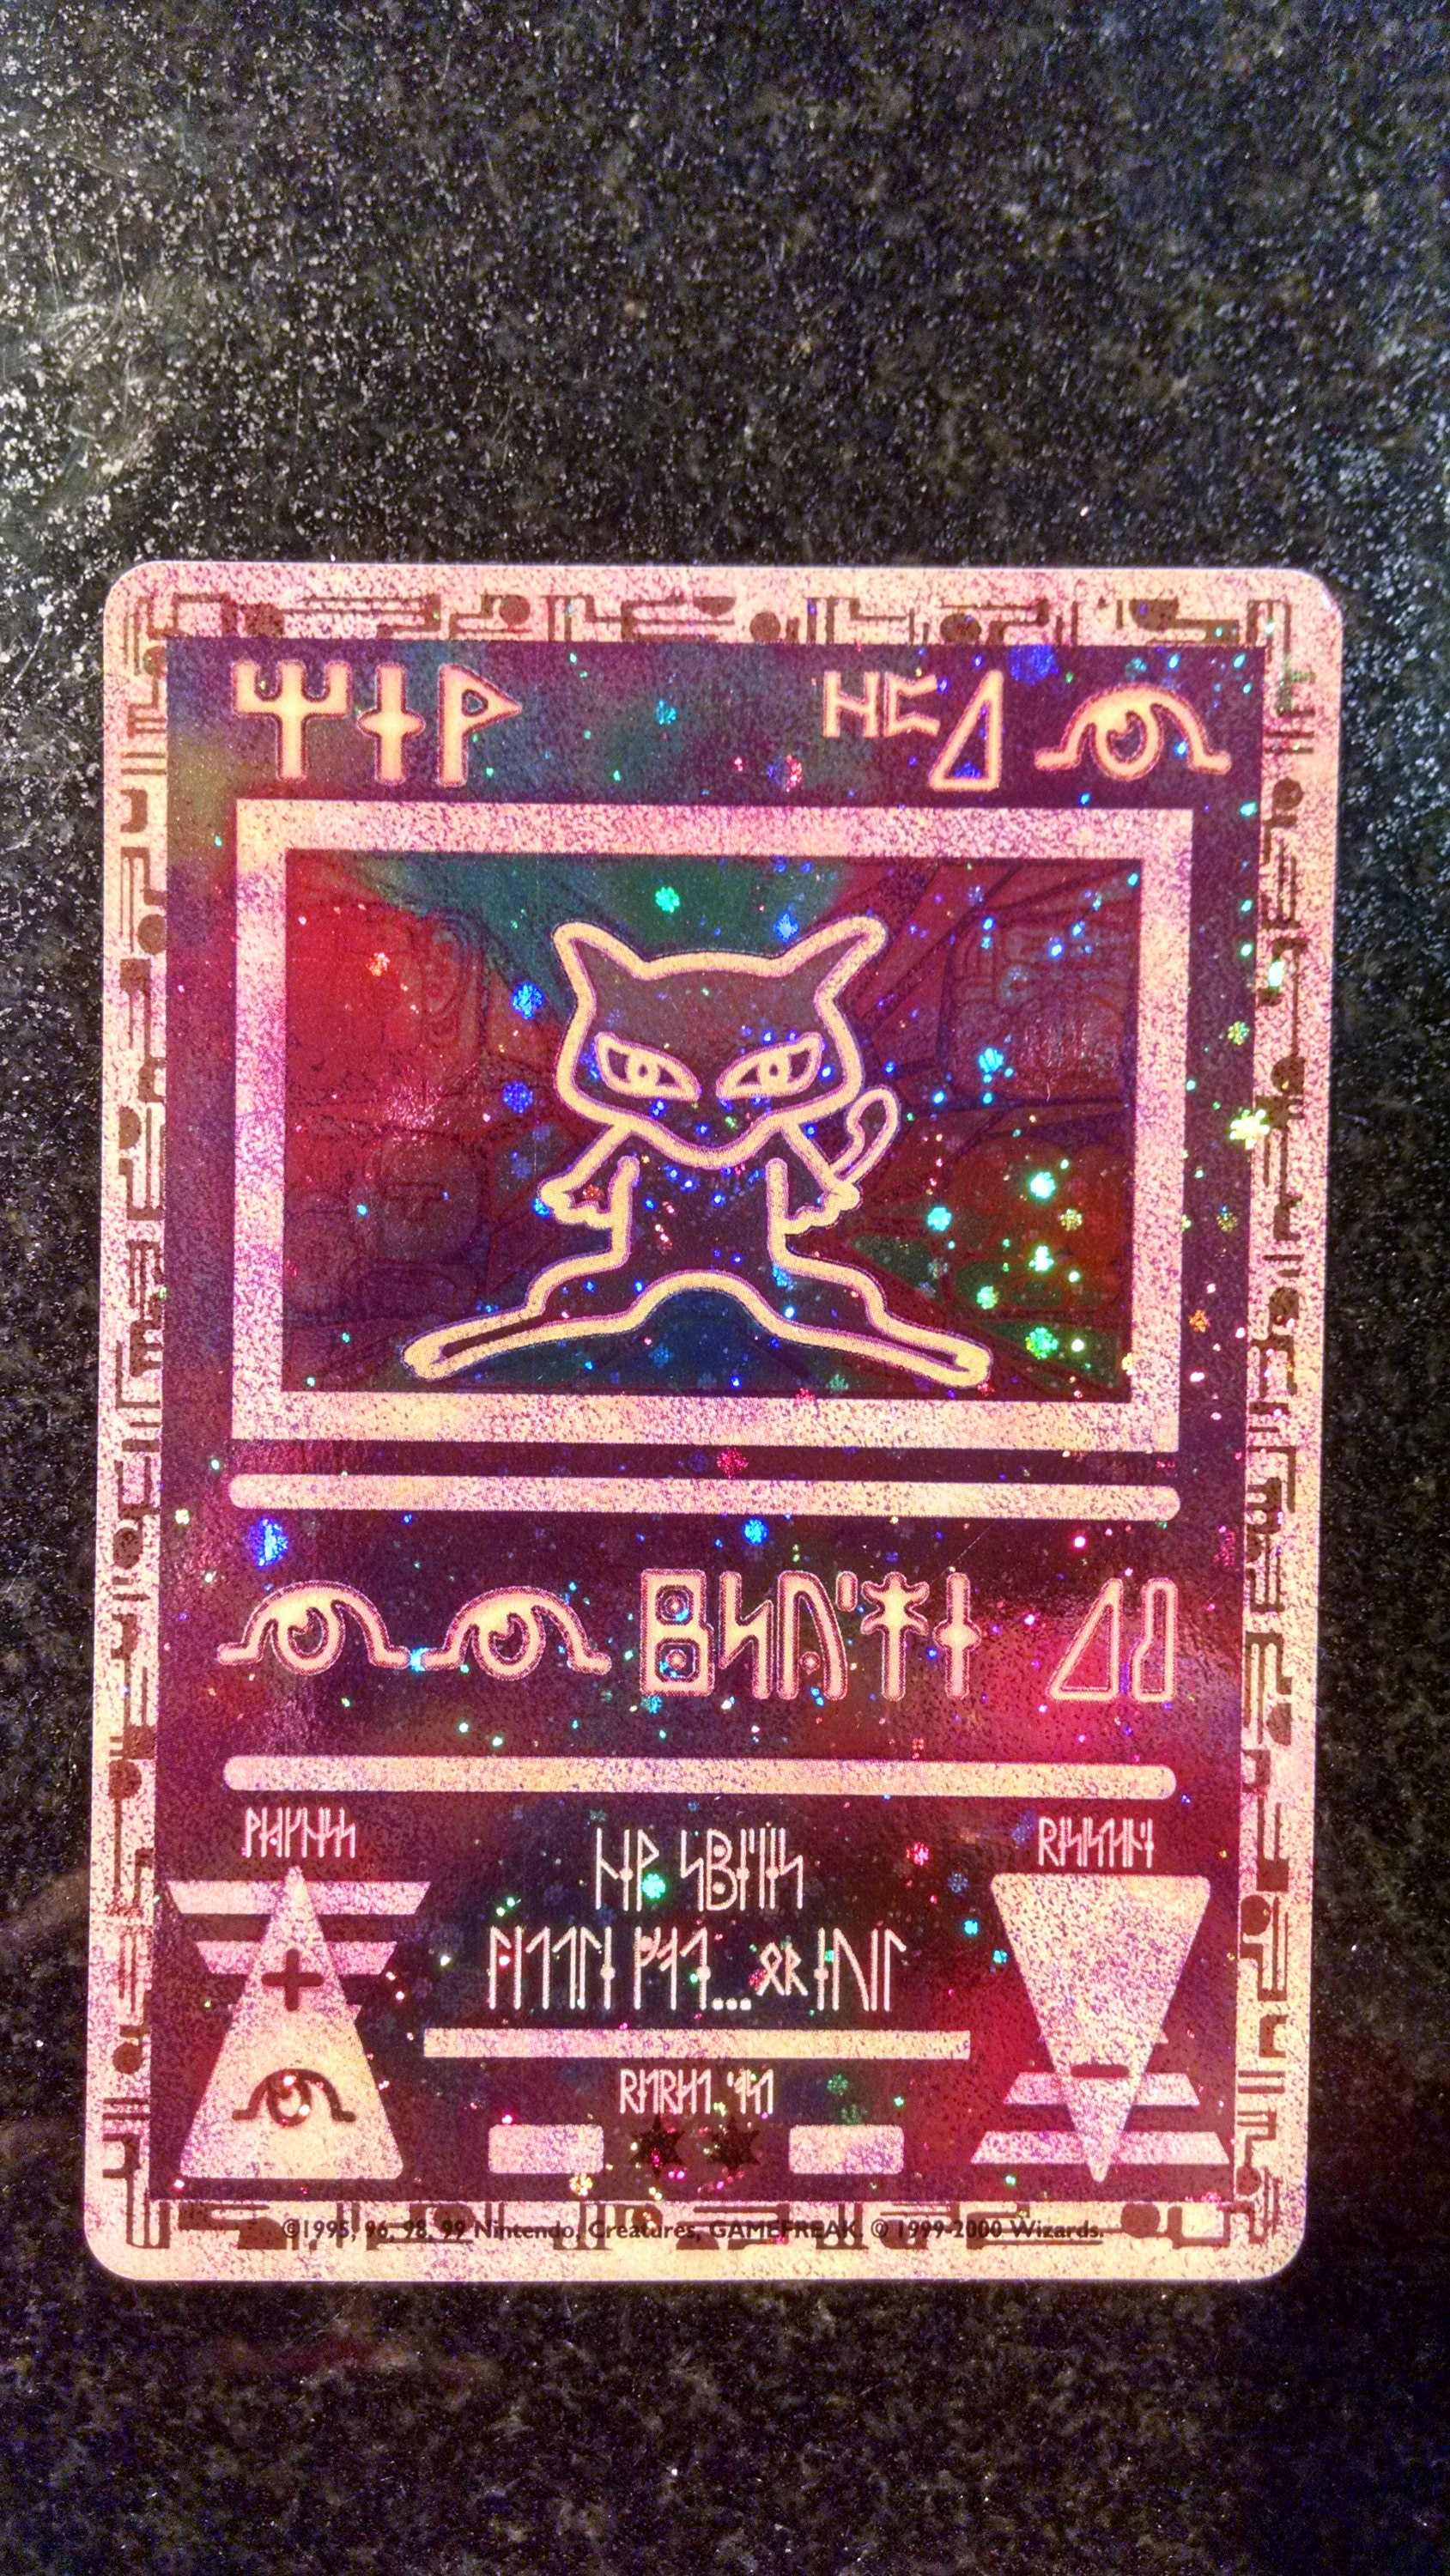 Rare Vintage Promo Mew Pokemon Card